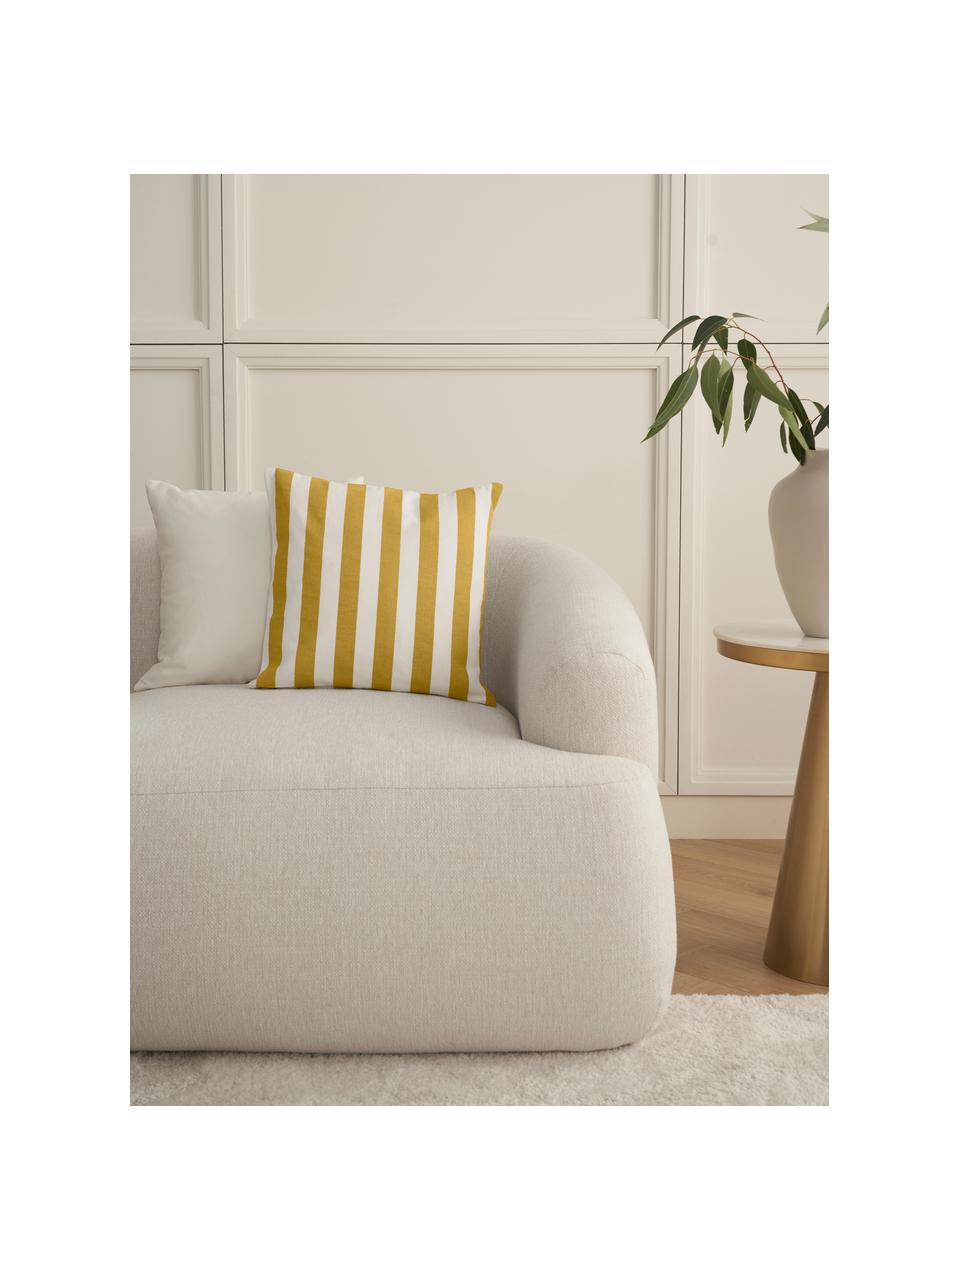 Gestreifte Kissenhülle Timon in Gelb/Weiß, 100% Baumwolle, Gelb, Weiß, B 50 x L 50 cm